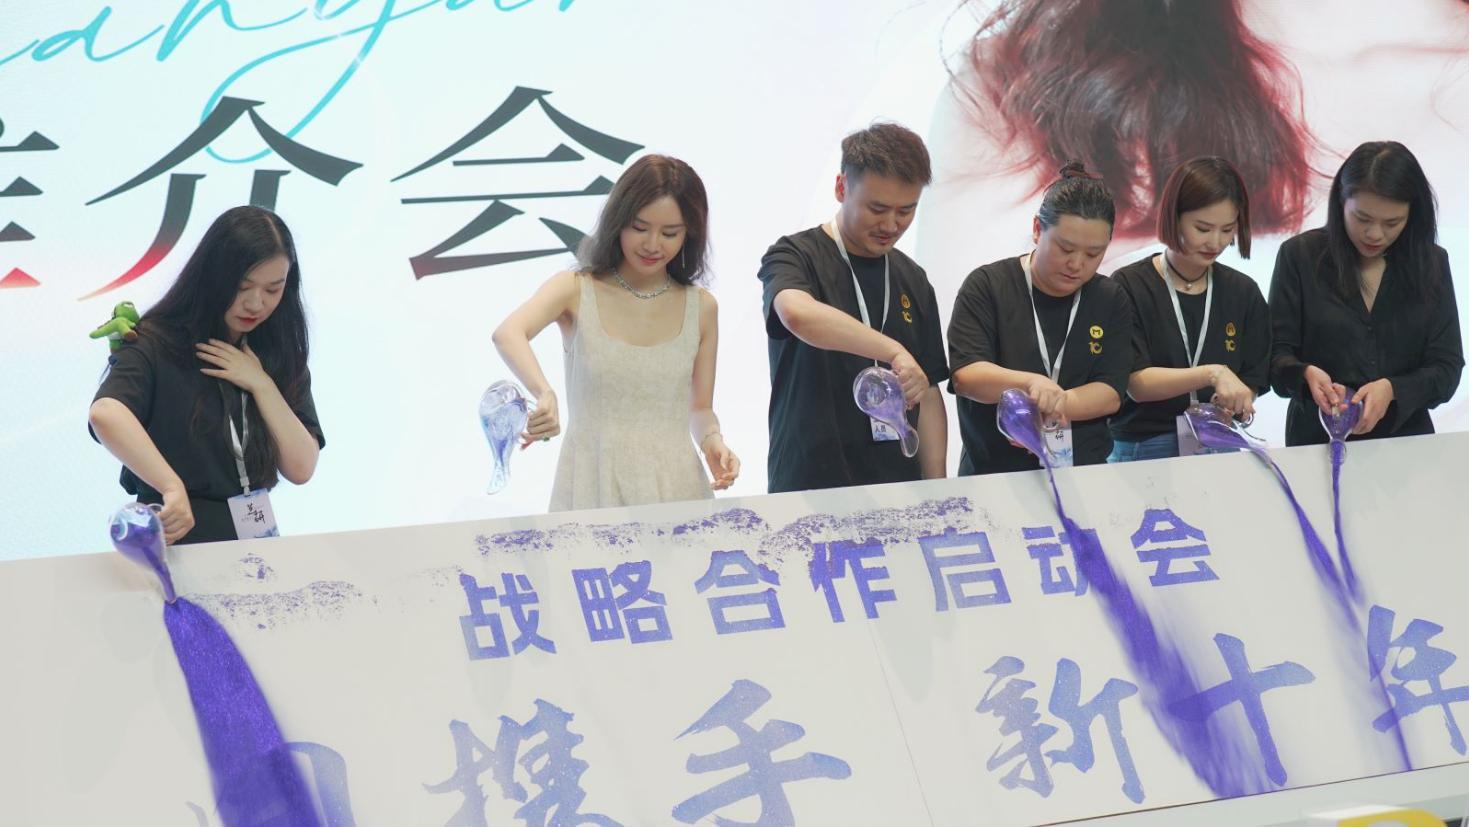 杭州牧马集团举行成立十周年大会 拉开全域电商布局帷幕